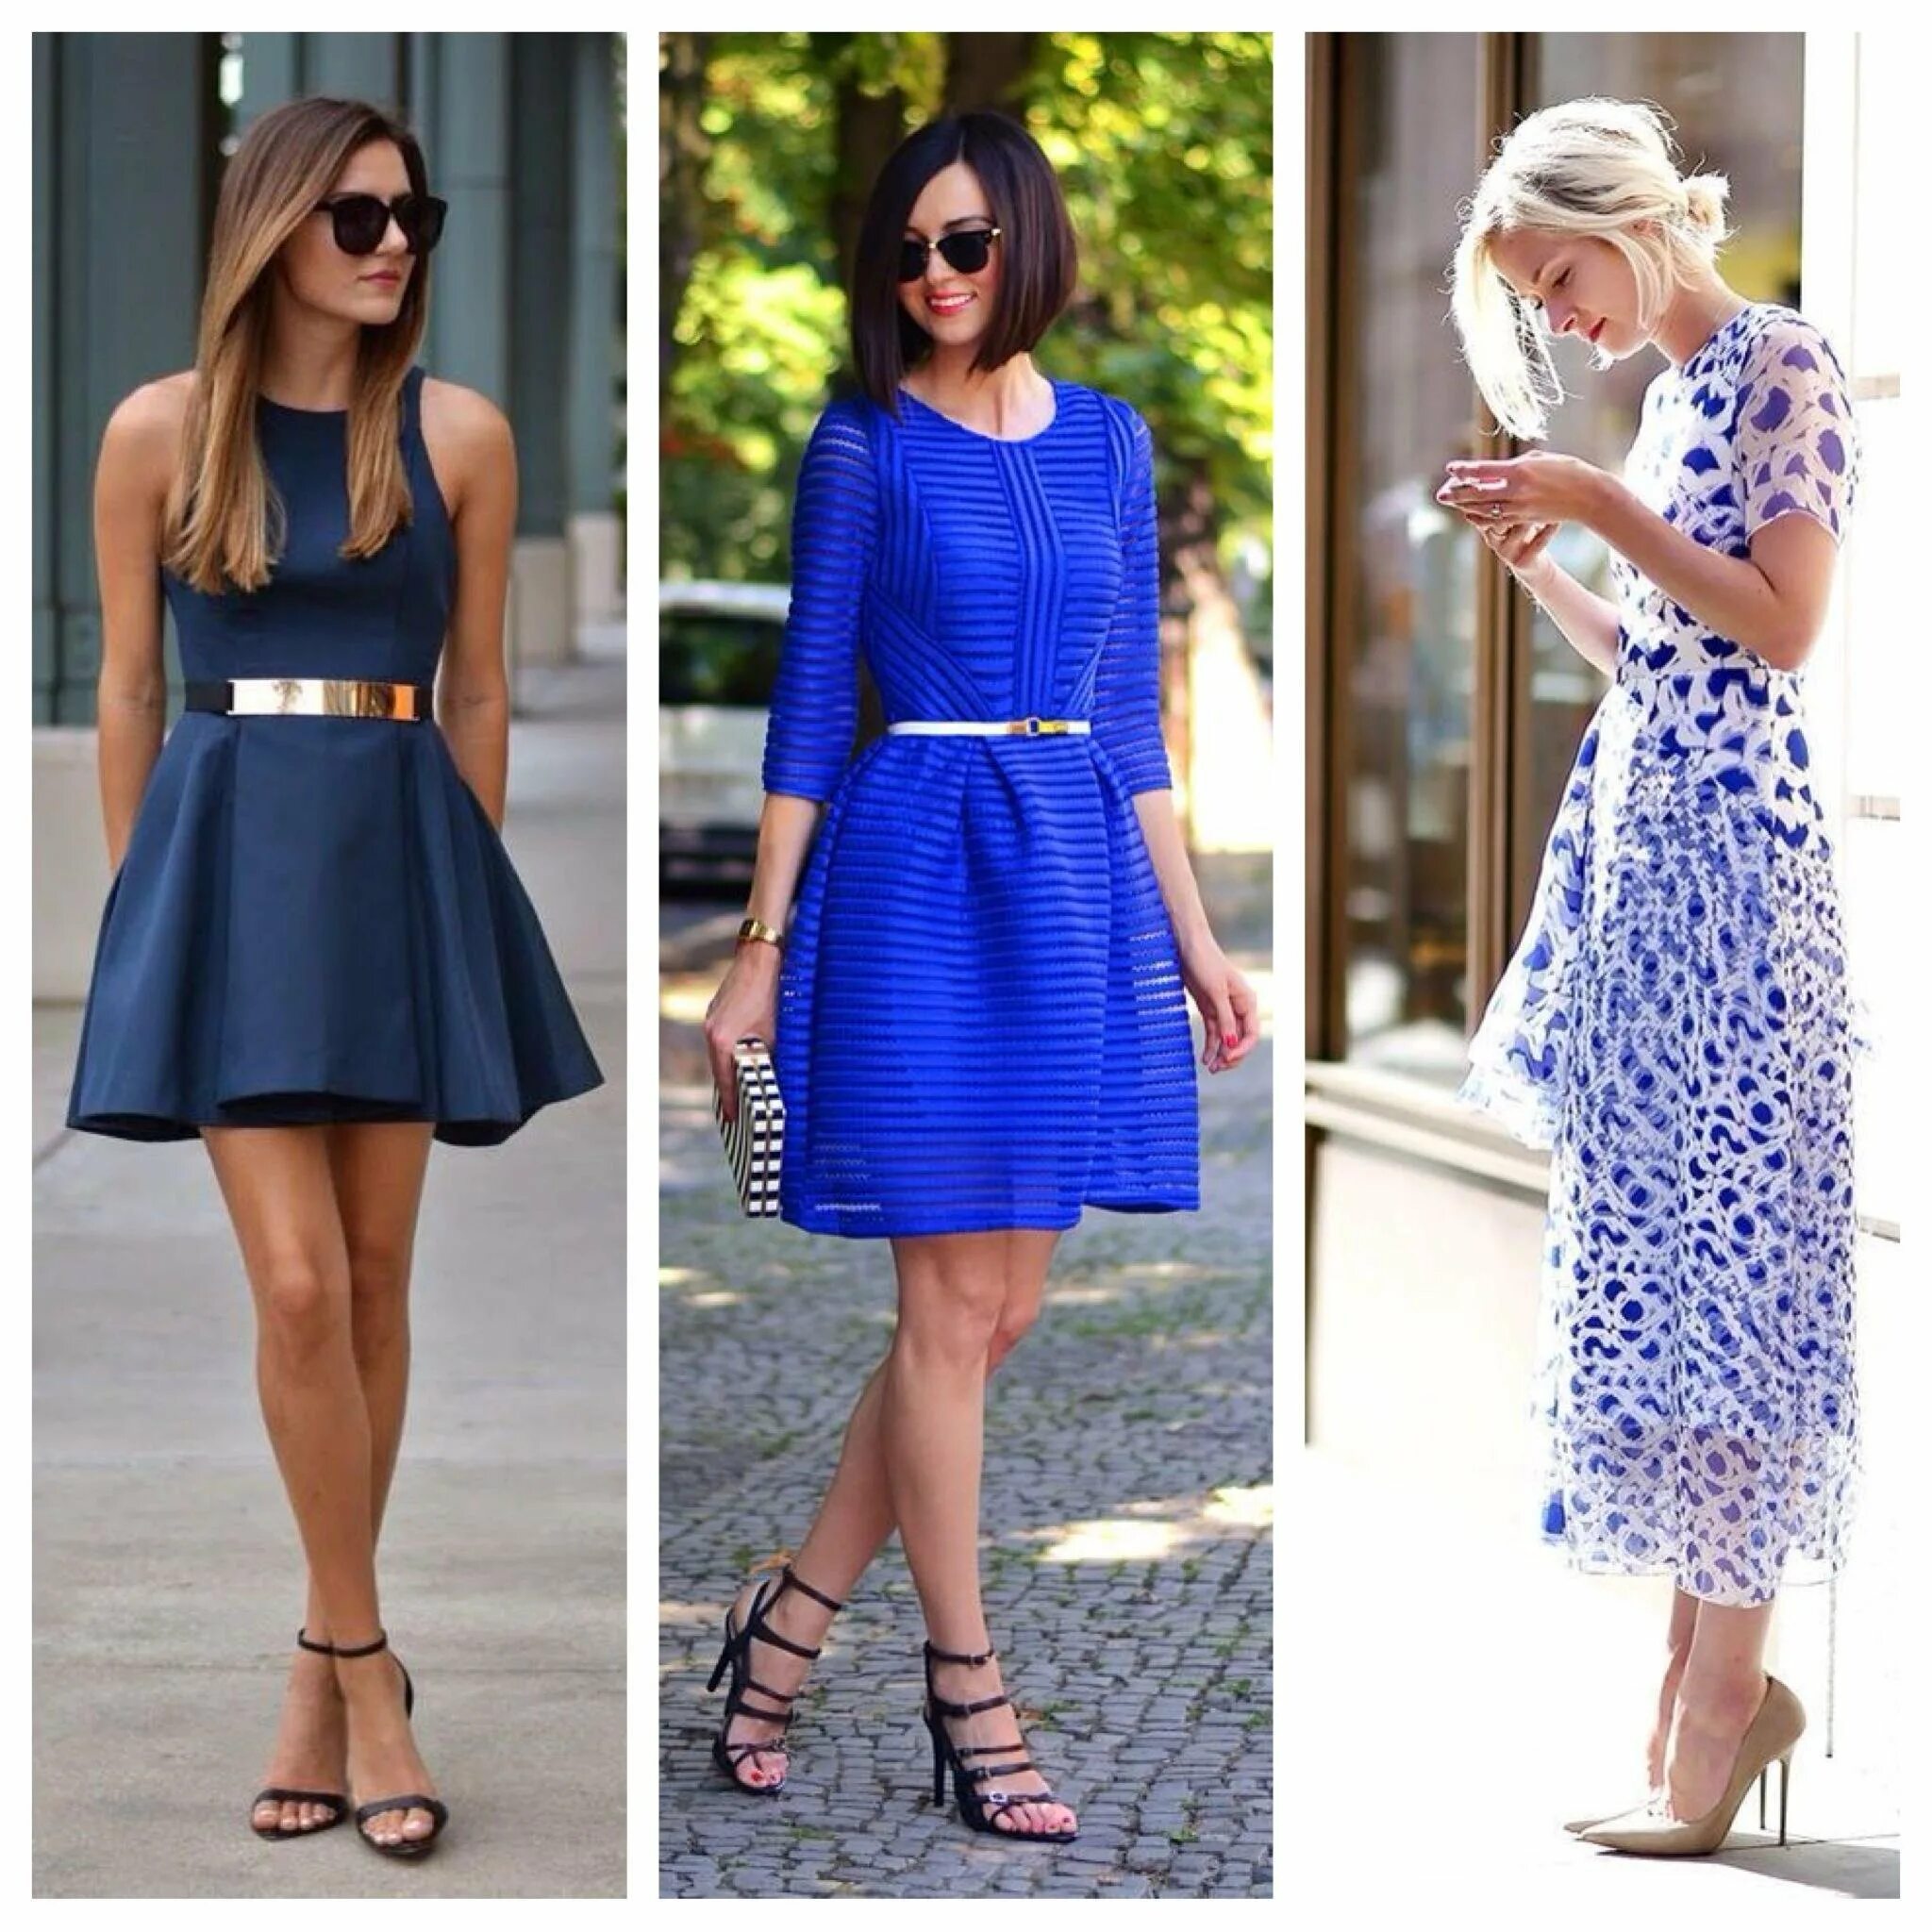 Туфли к синему платью. Обувь к синему платью. Туфли под голубое платье. Образ с синим платьем. Синее ли платье